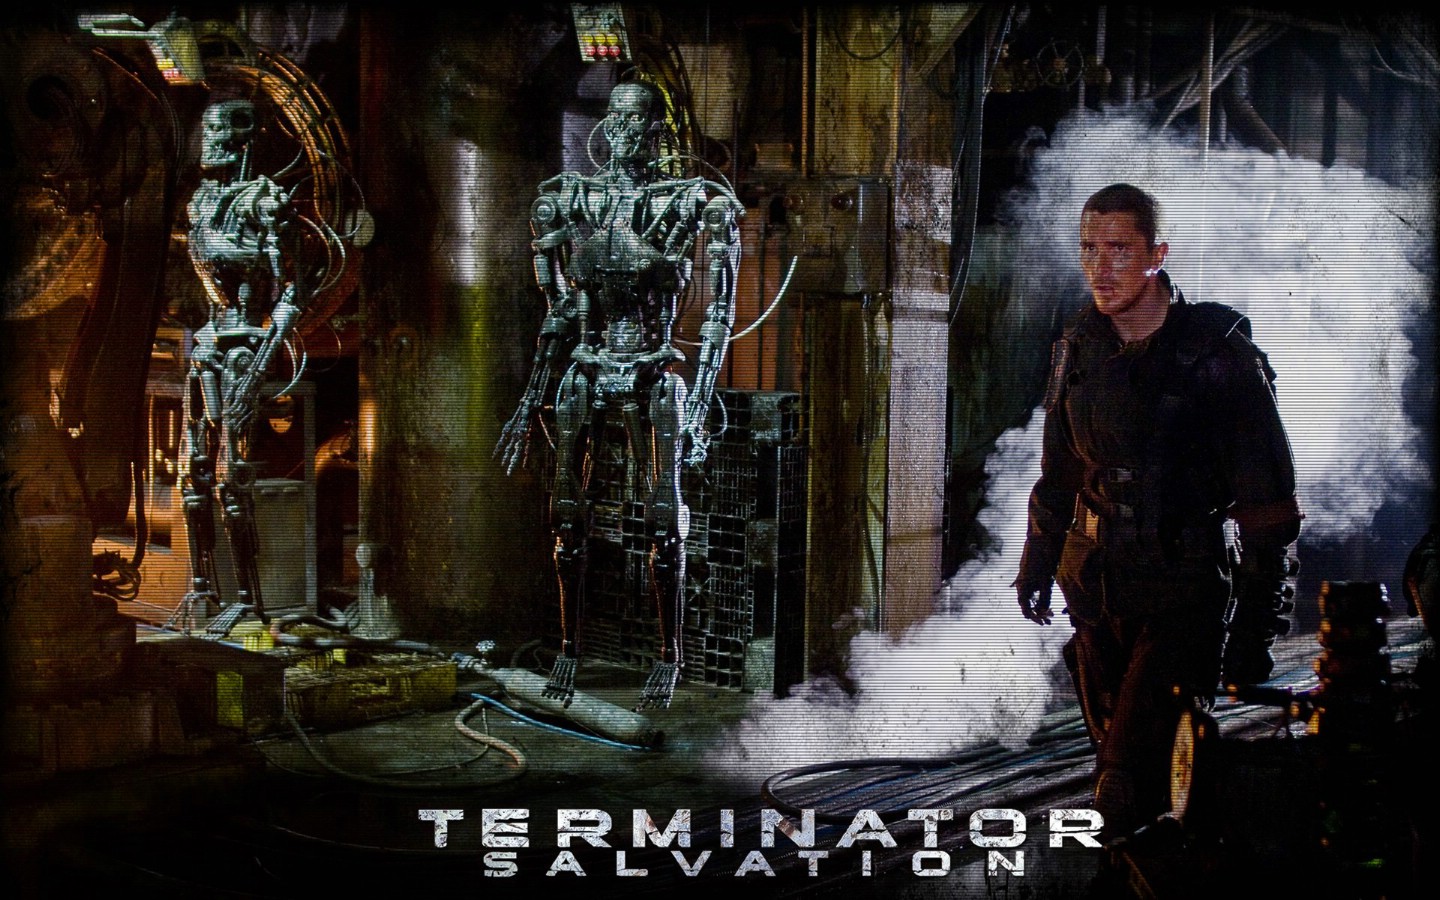 壁纸1440x900终结者 救世主 Terminator Salvation 电影壁纸 Terminator Salvation 终结者4壁纸 《终结者救世主 Terminator Salvation 》壁纸 《终结者救世主 Terminator Salvation 》图片 《终结者救世主 Terminator Salvation 》素材 影视壁纸 影视图库 影视图片素材桌面壁纸